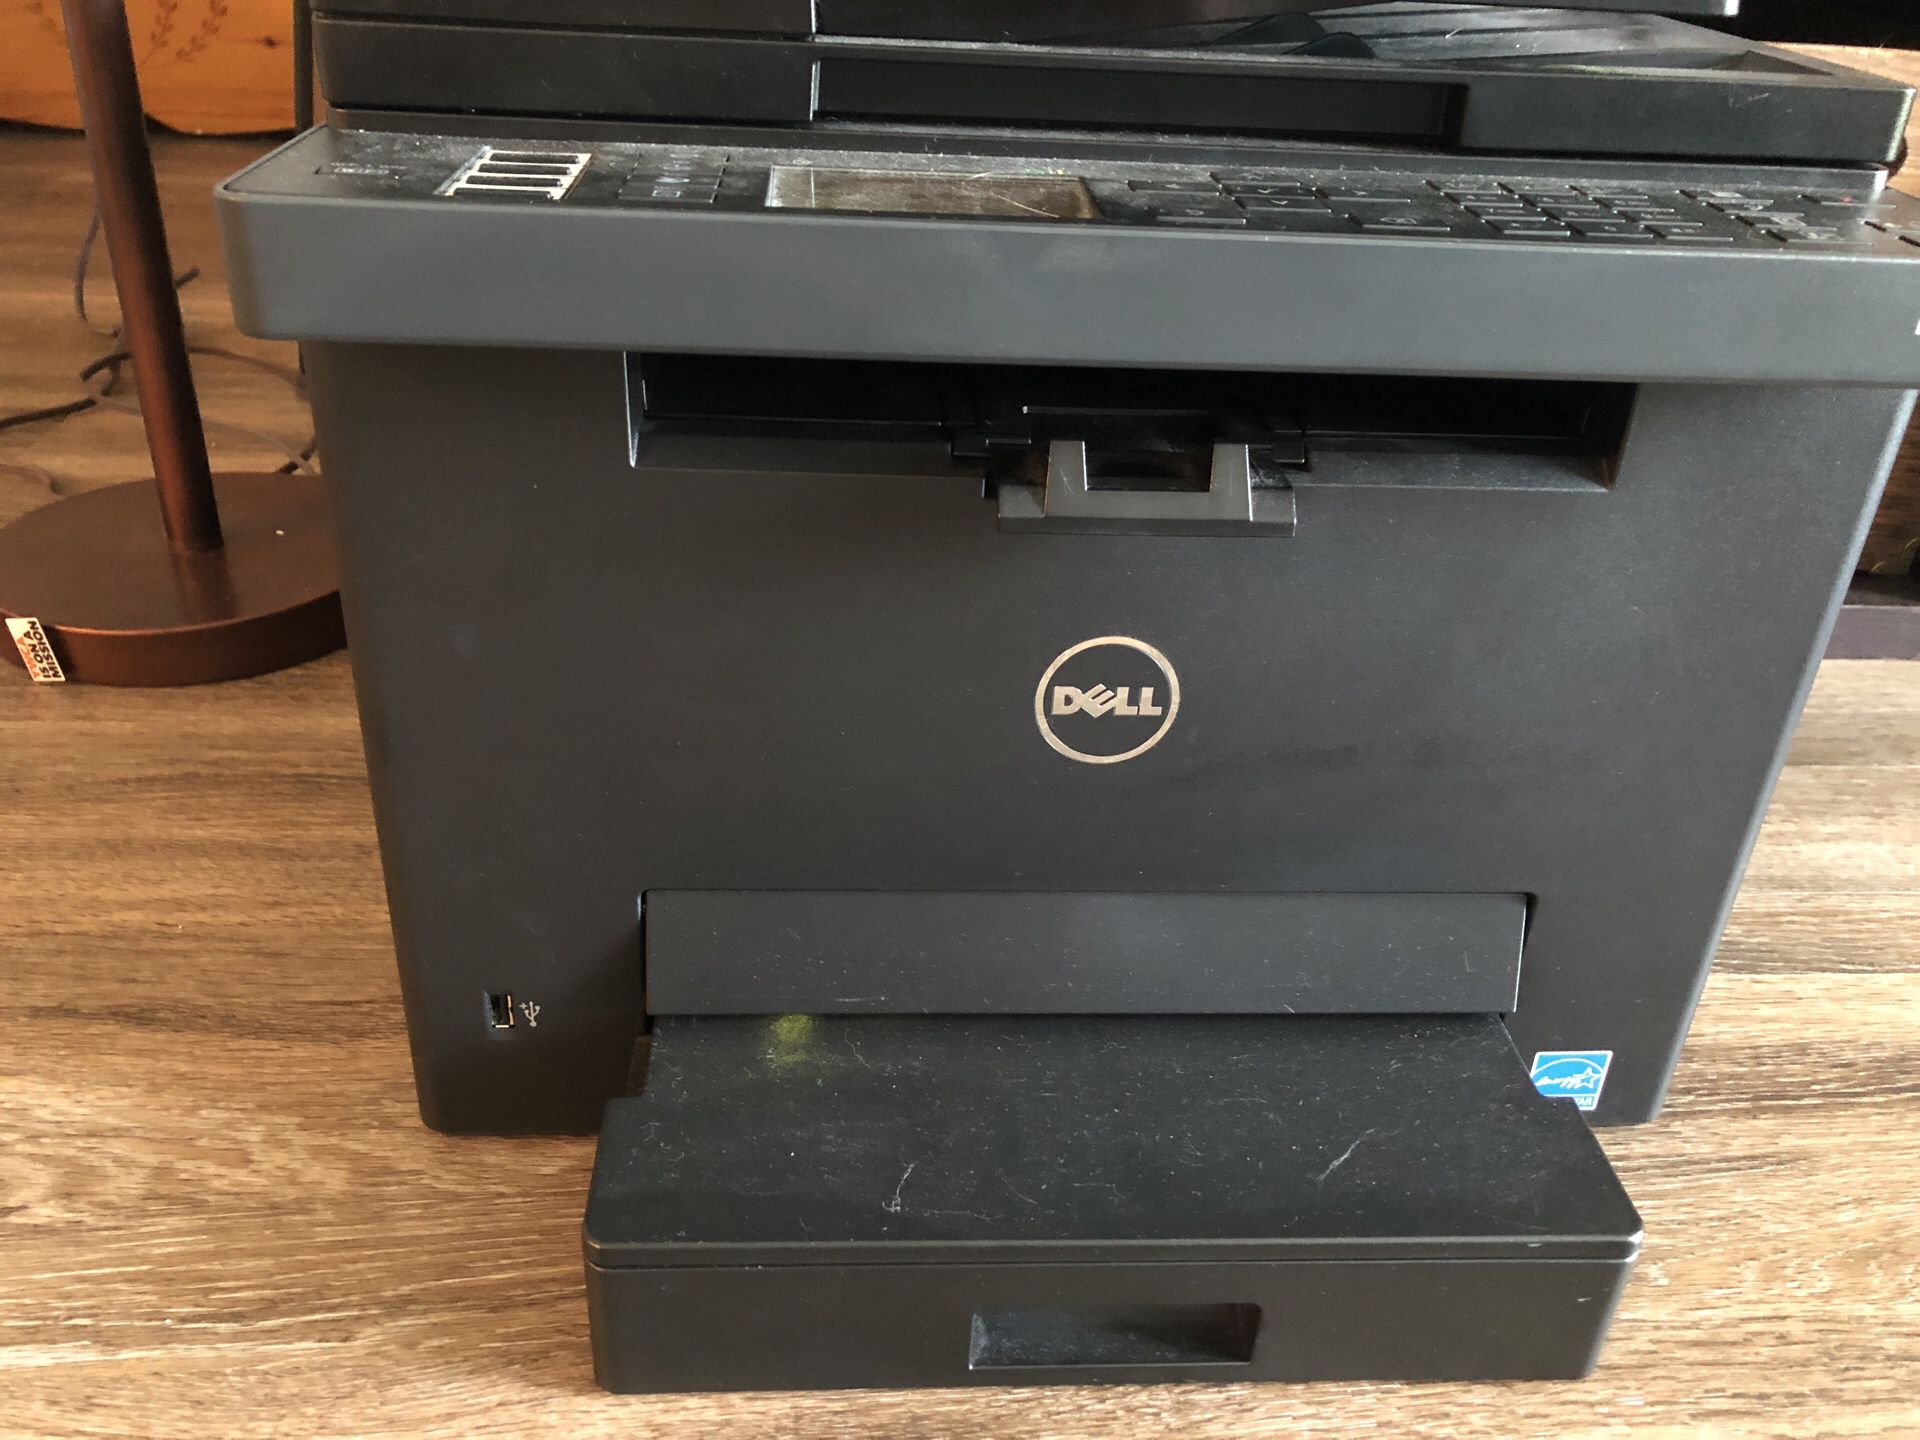 Dell E525w Printer/scanner/fax